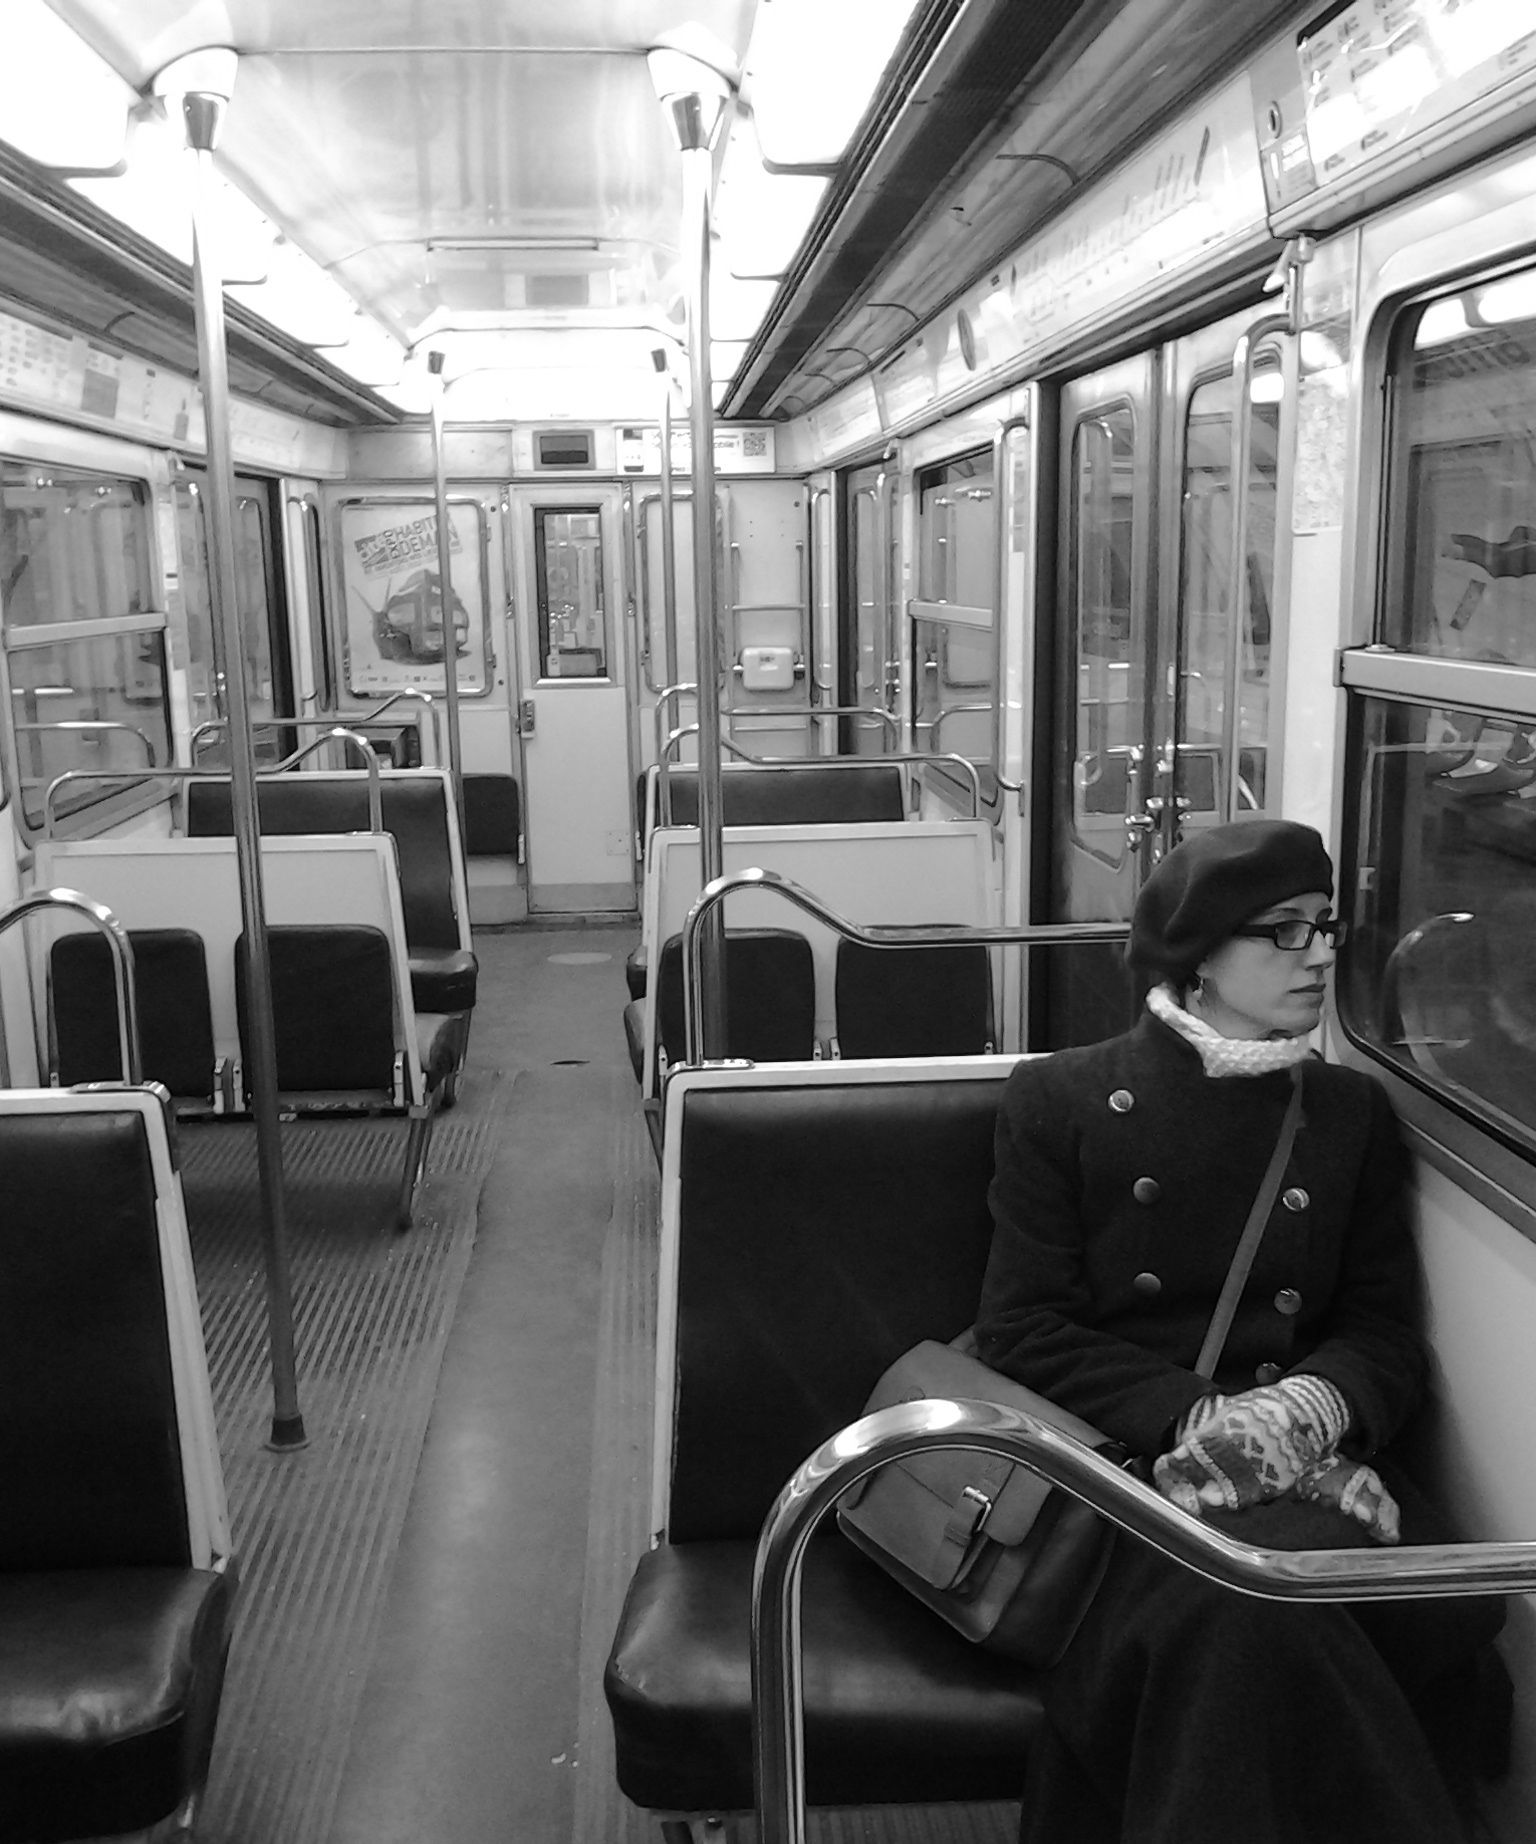 Los domingos por la mañana puedes encontrar el metro casi vacío.